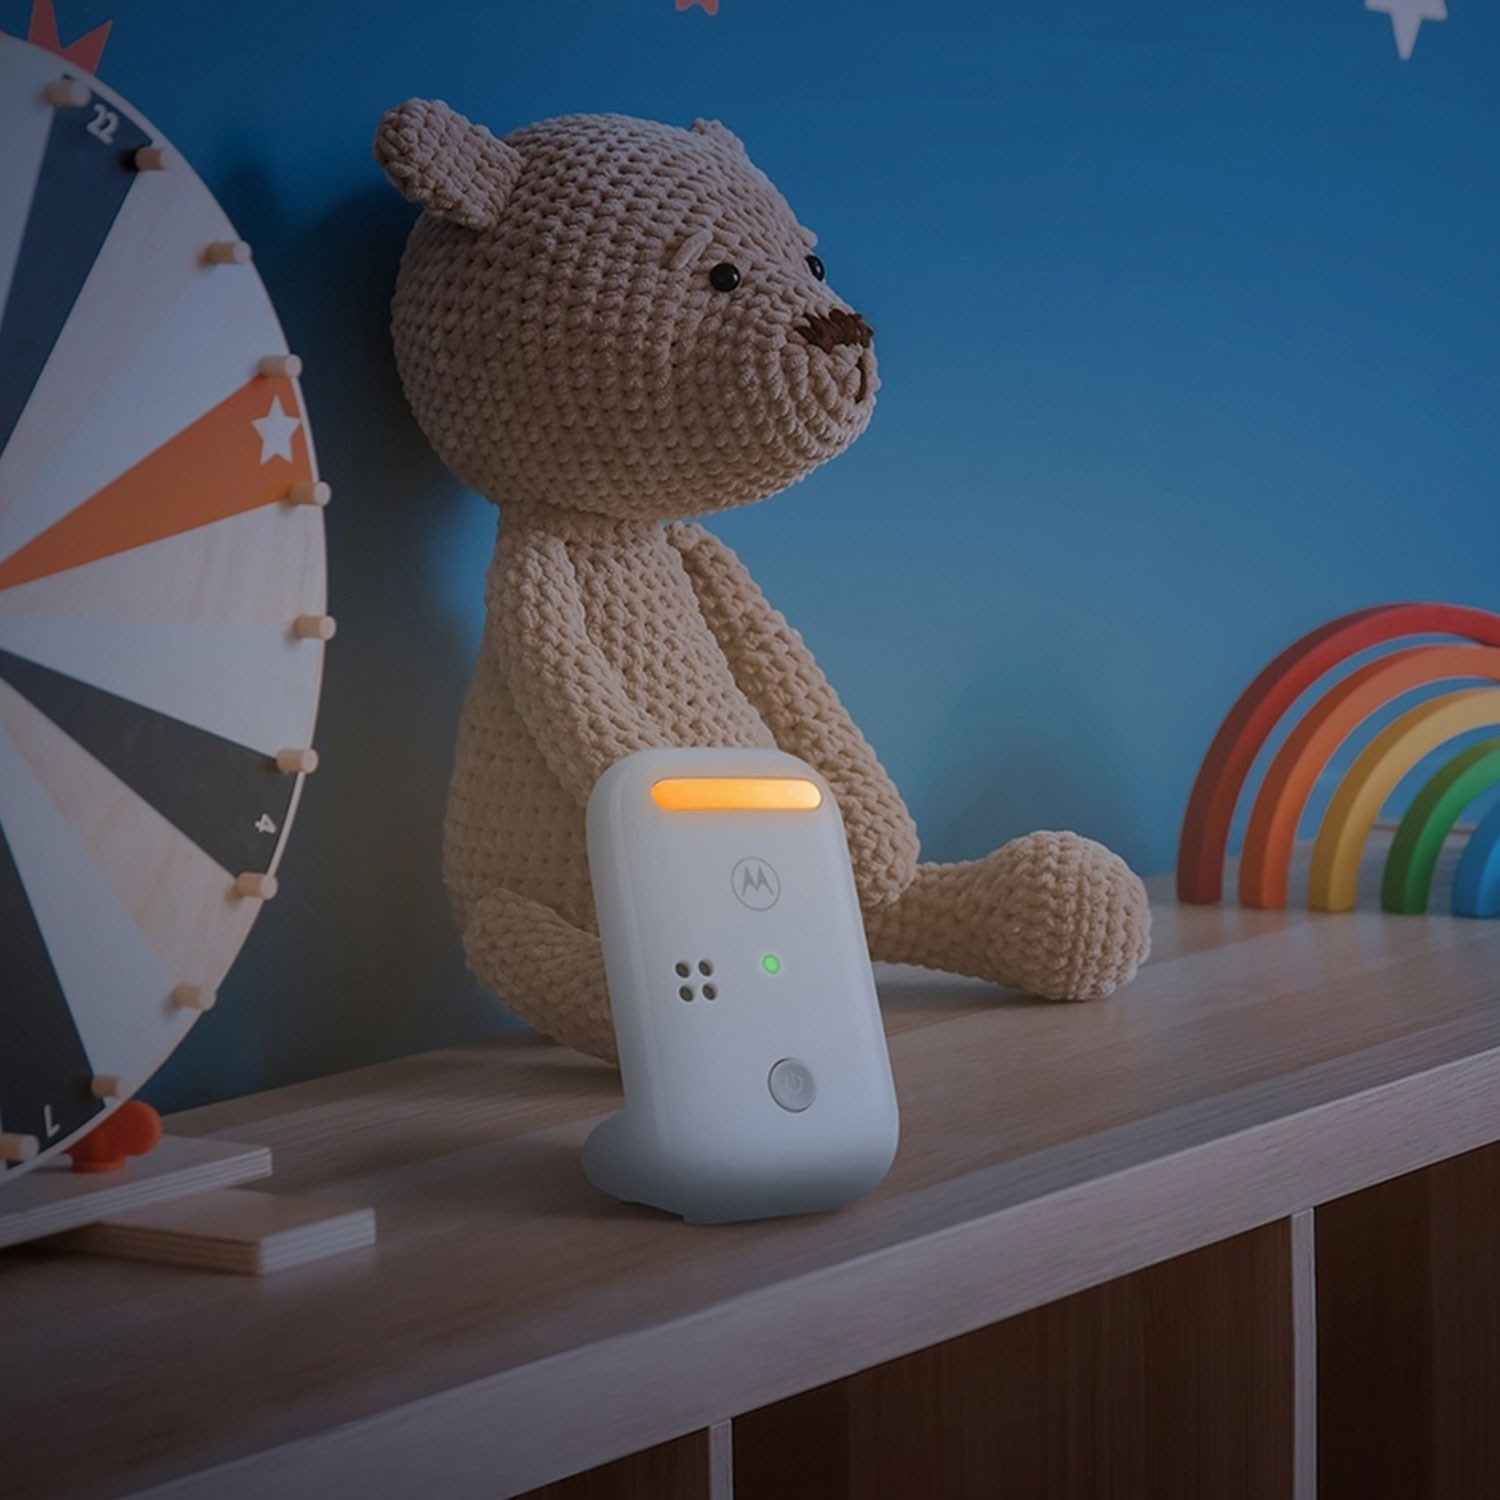 Motorola PIP11 Dect Dijital Ekranlı Bebek Telsizi 